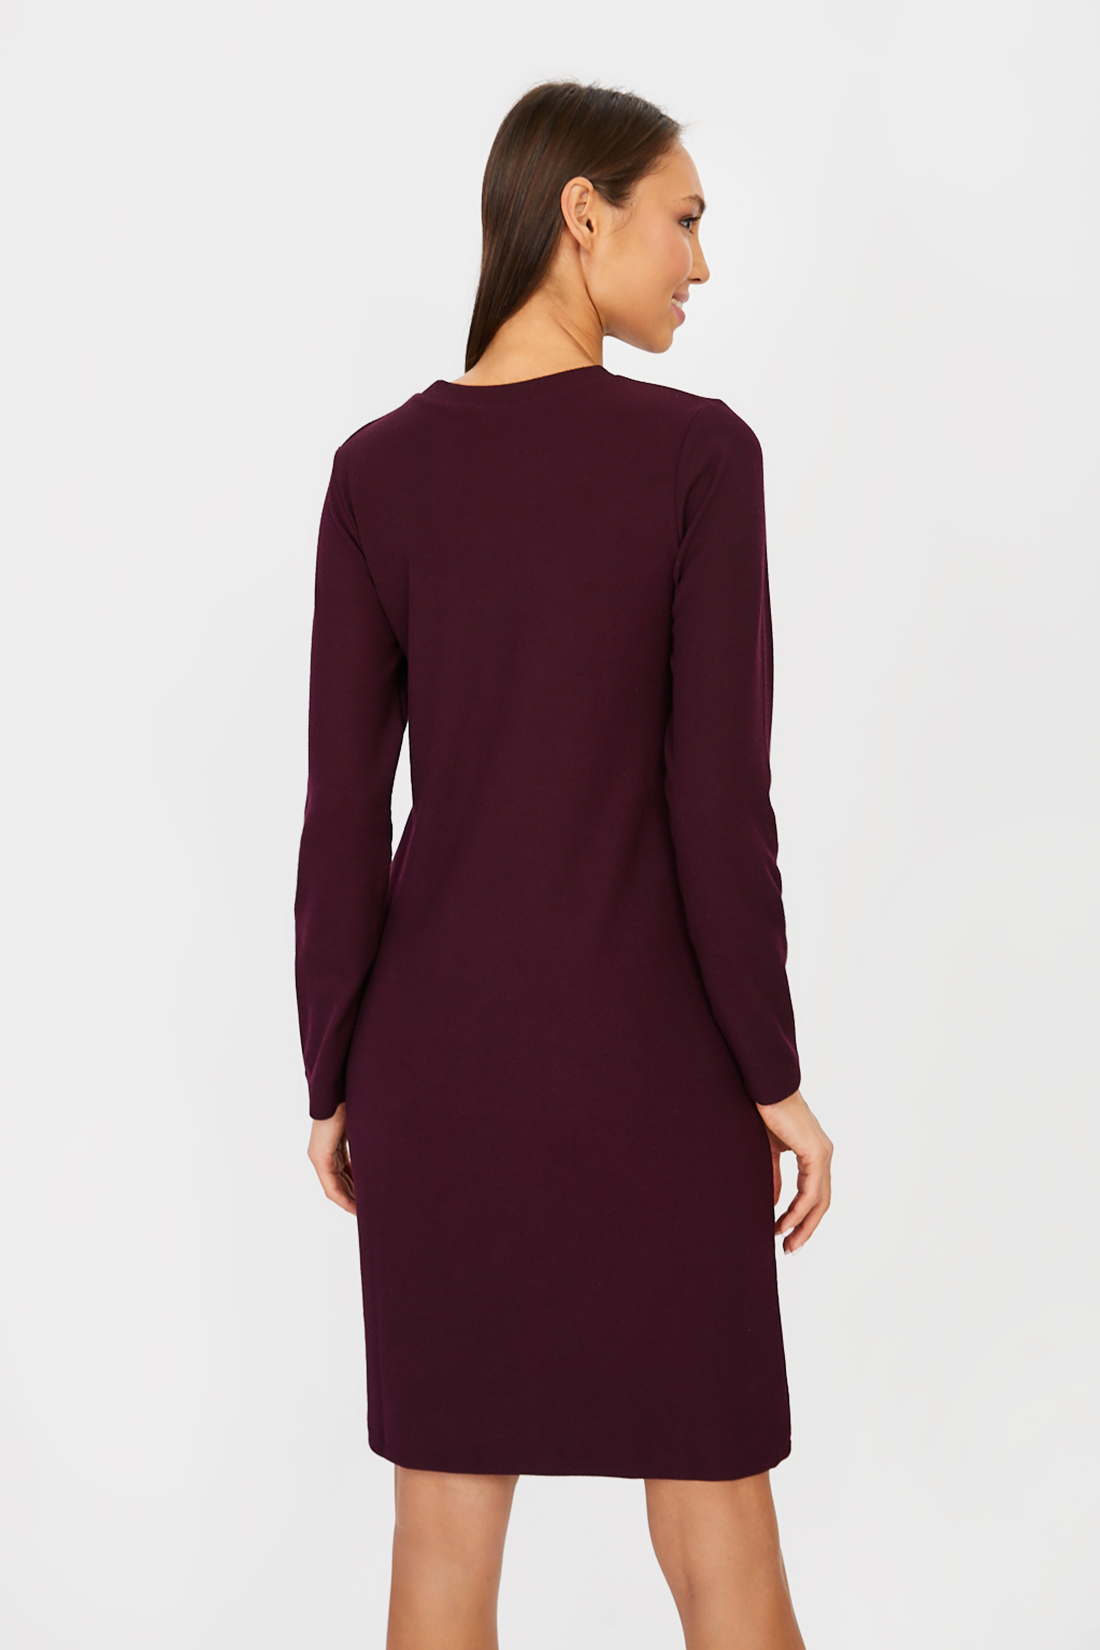 Платье (арт. baon B451506), размер L, цвет фиолетовый Платье (арт. baon B451506) - фото 2